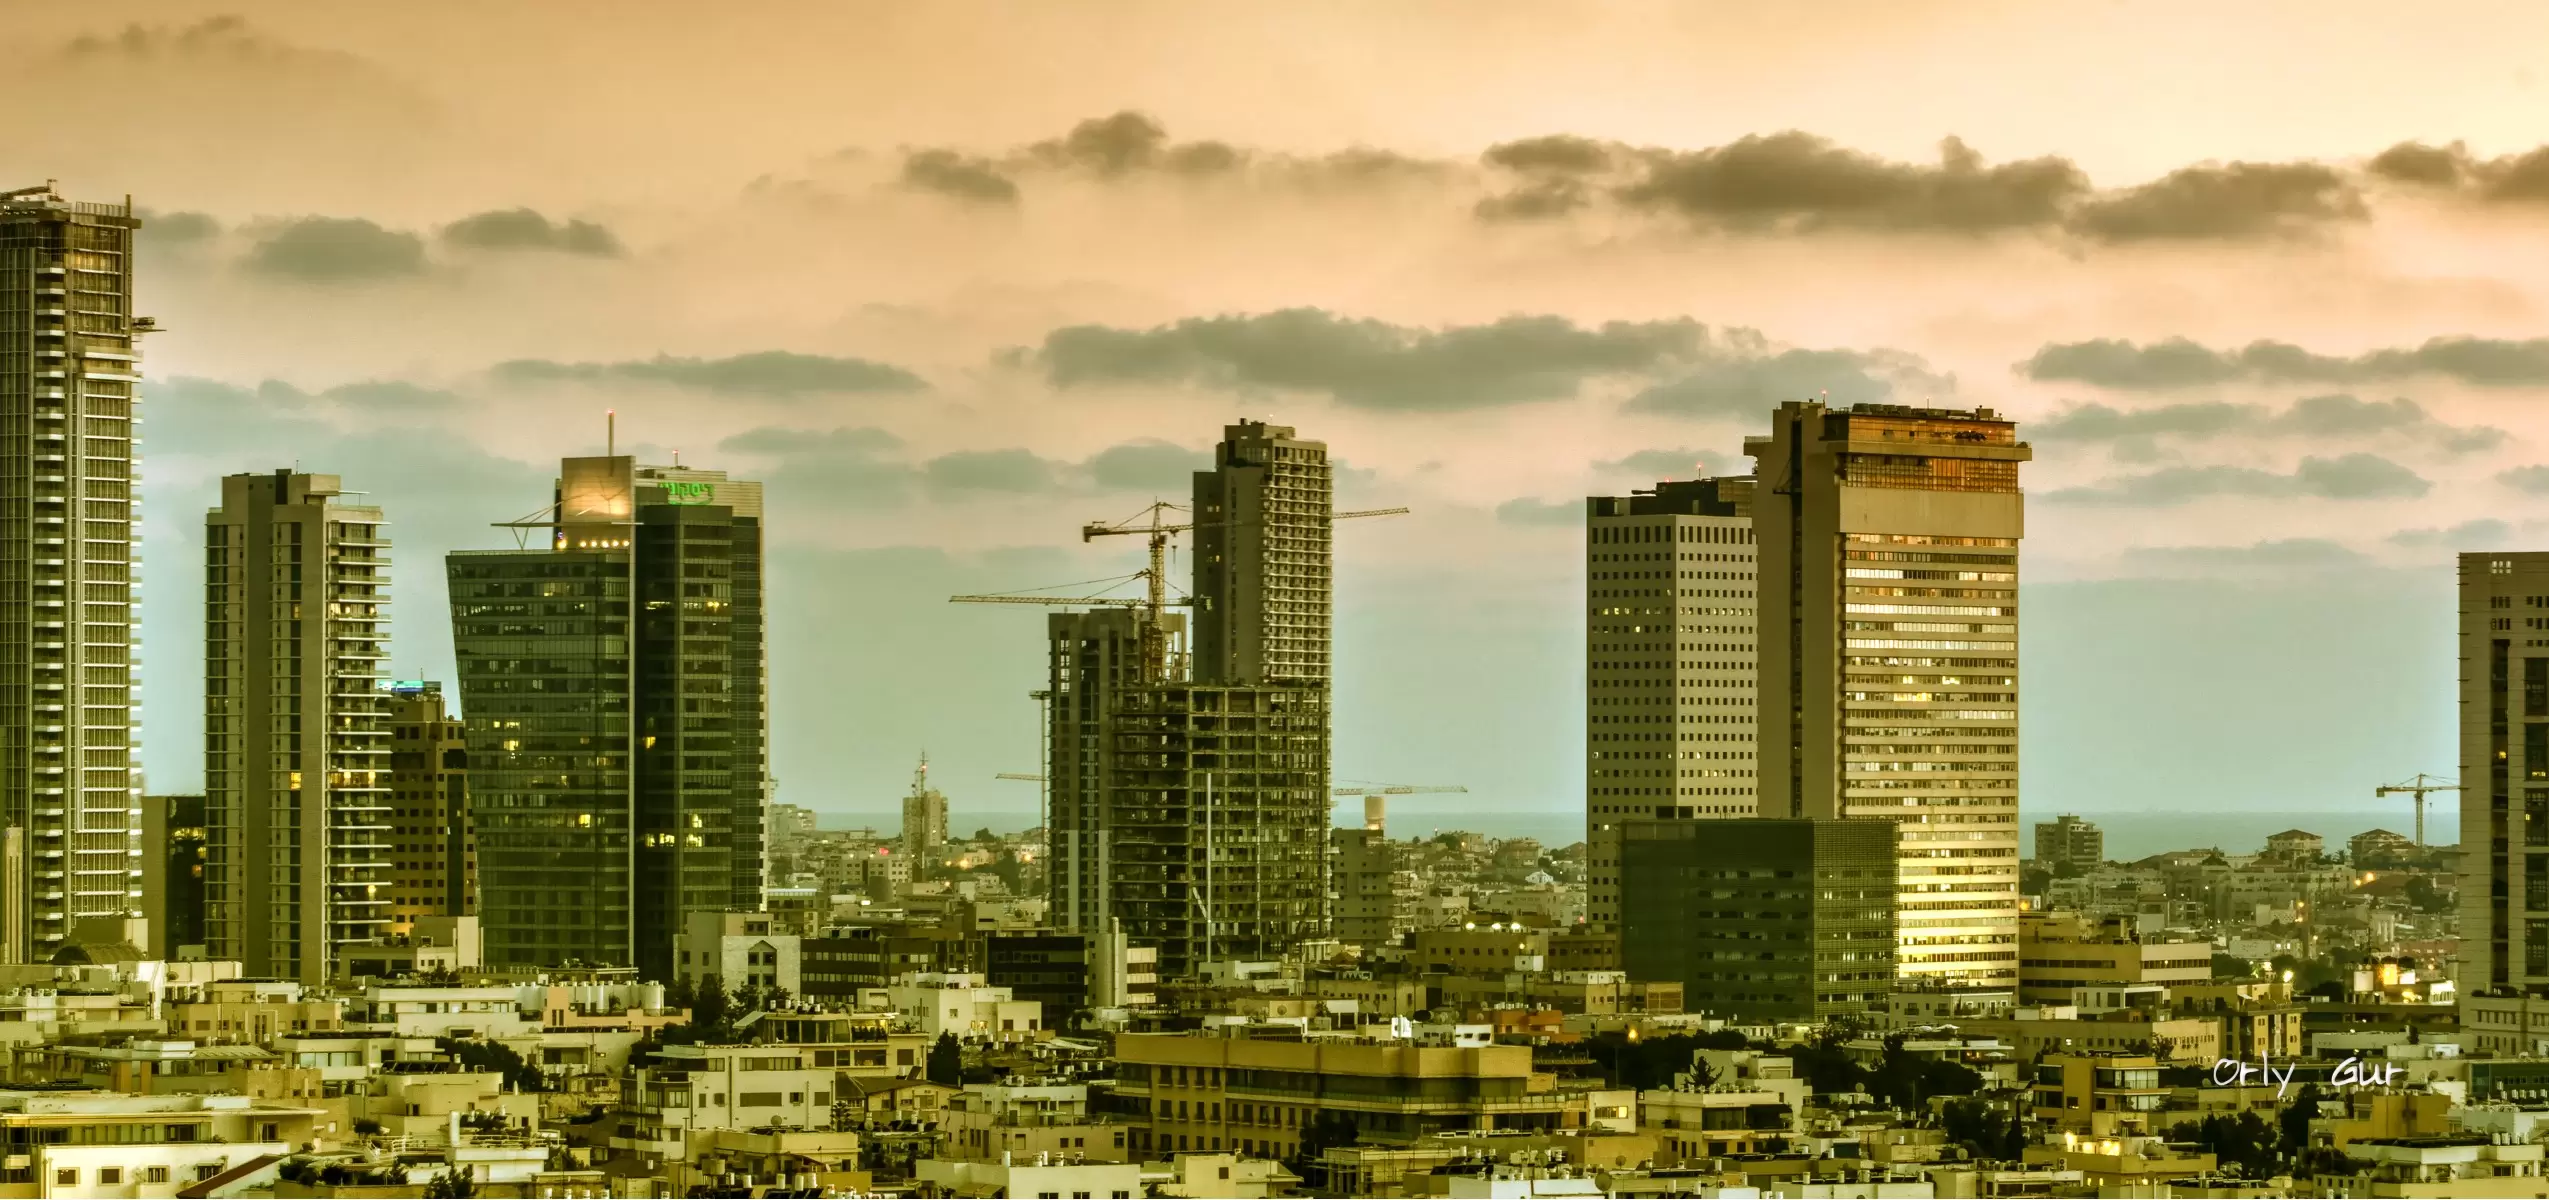 בין הערביים בתל אביב - אורלי גור - תמונות אורבניות לסלון תמונות בחלקים  - מק''ט: 264167